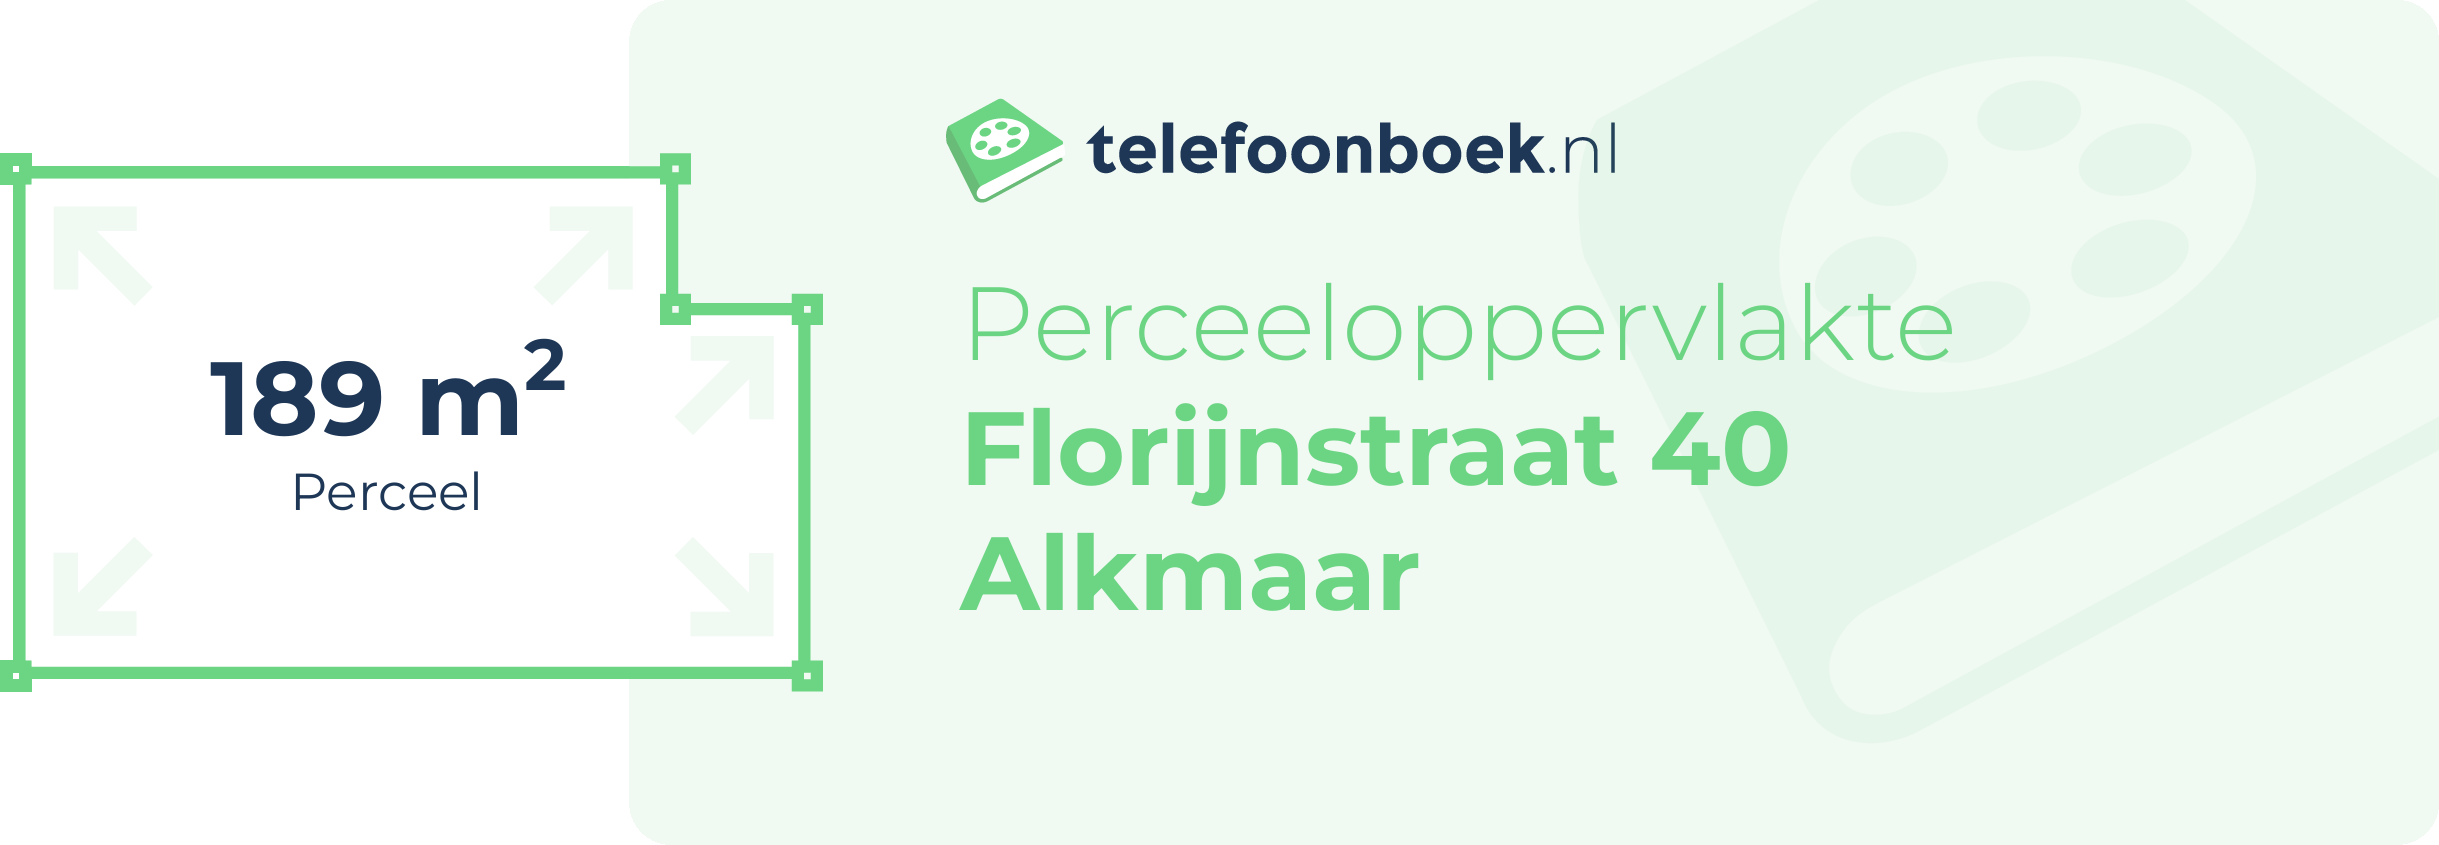 Perceeloppervlakte Florijnstraat 40 Alkmaar